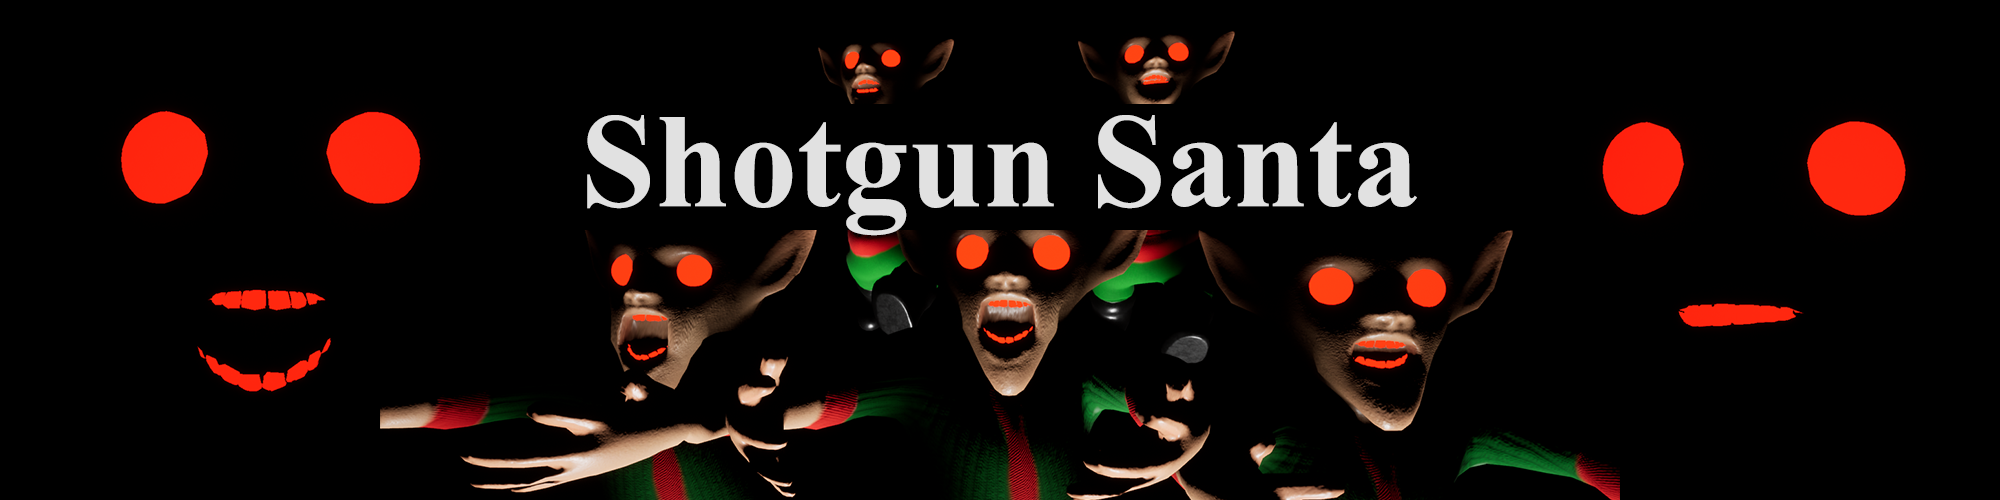 Shotgun Santa